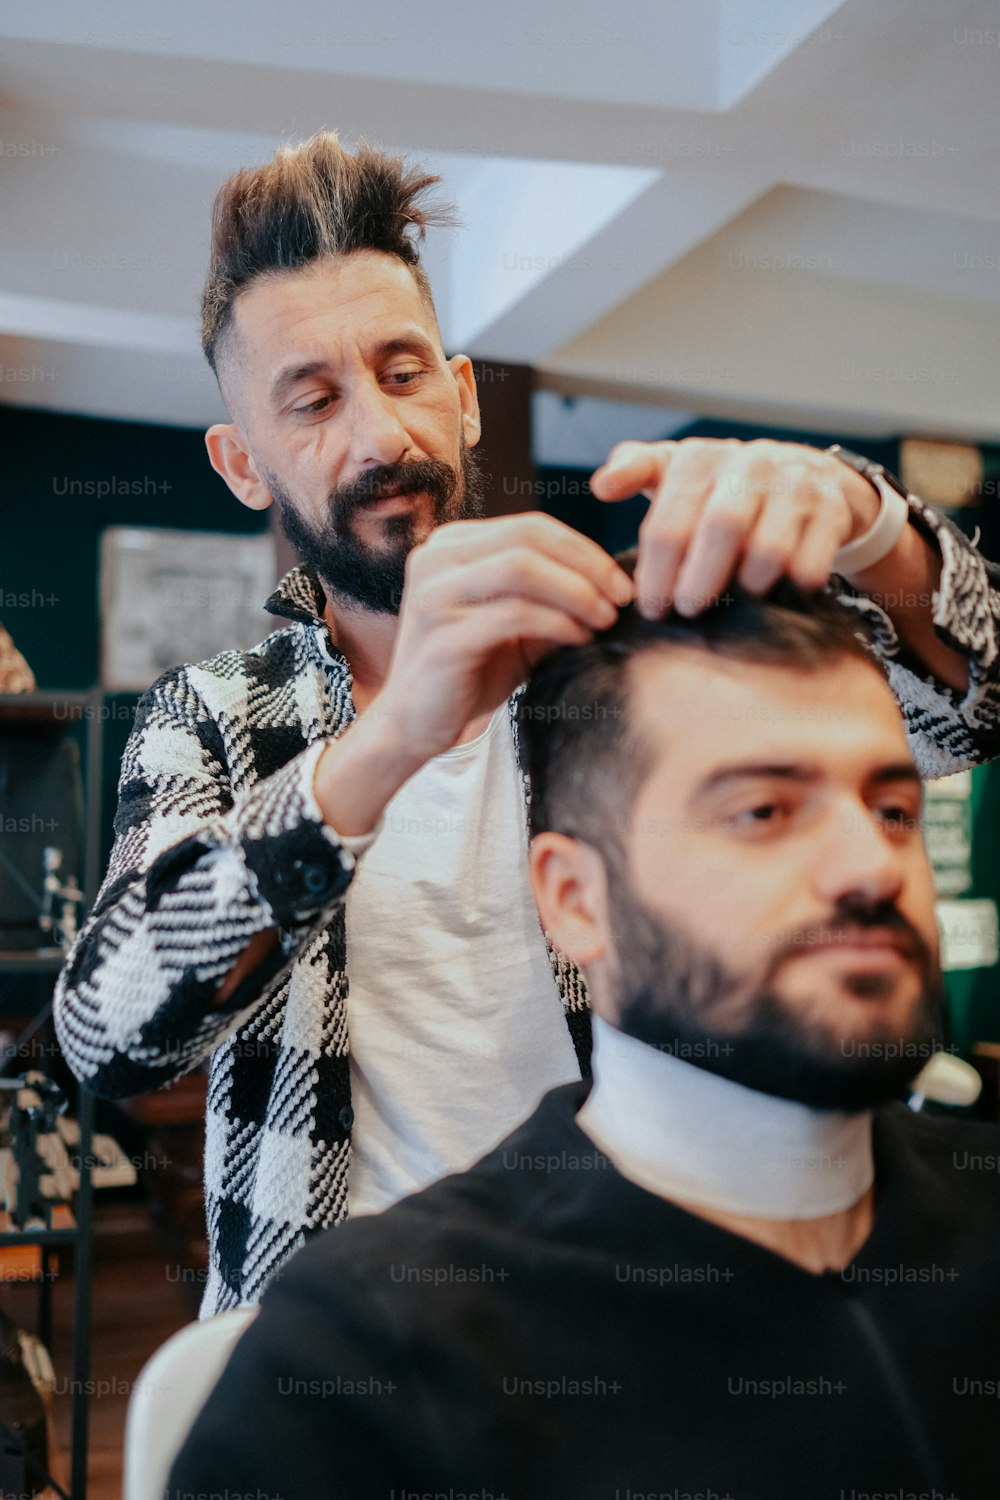 Ein Mann schneidet einem anderen Mann in einem Friseursalon die Haare